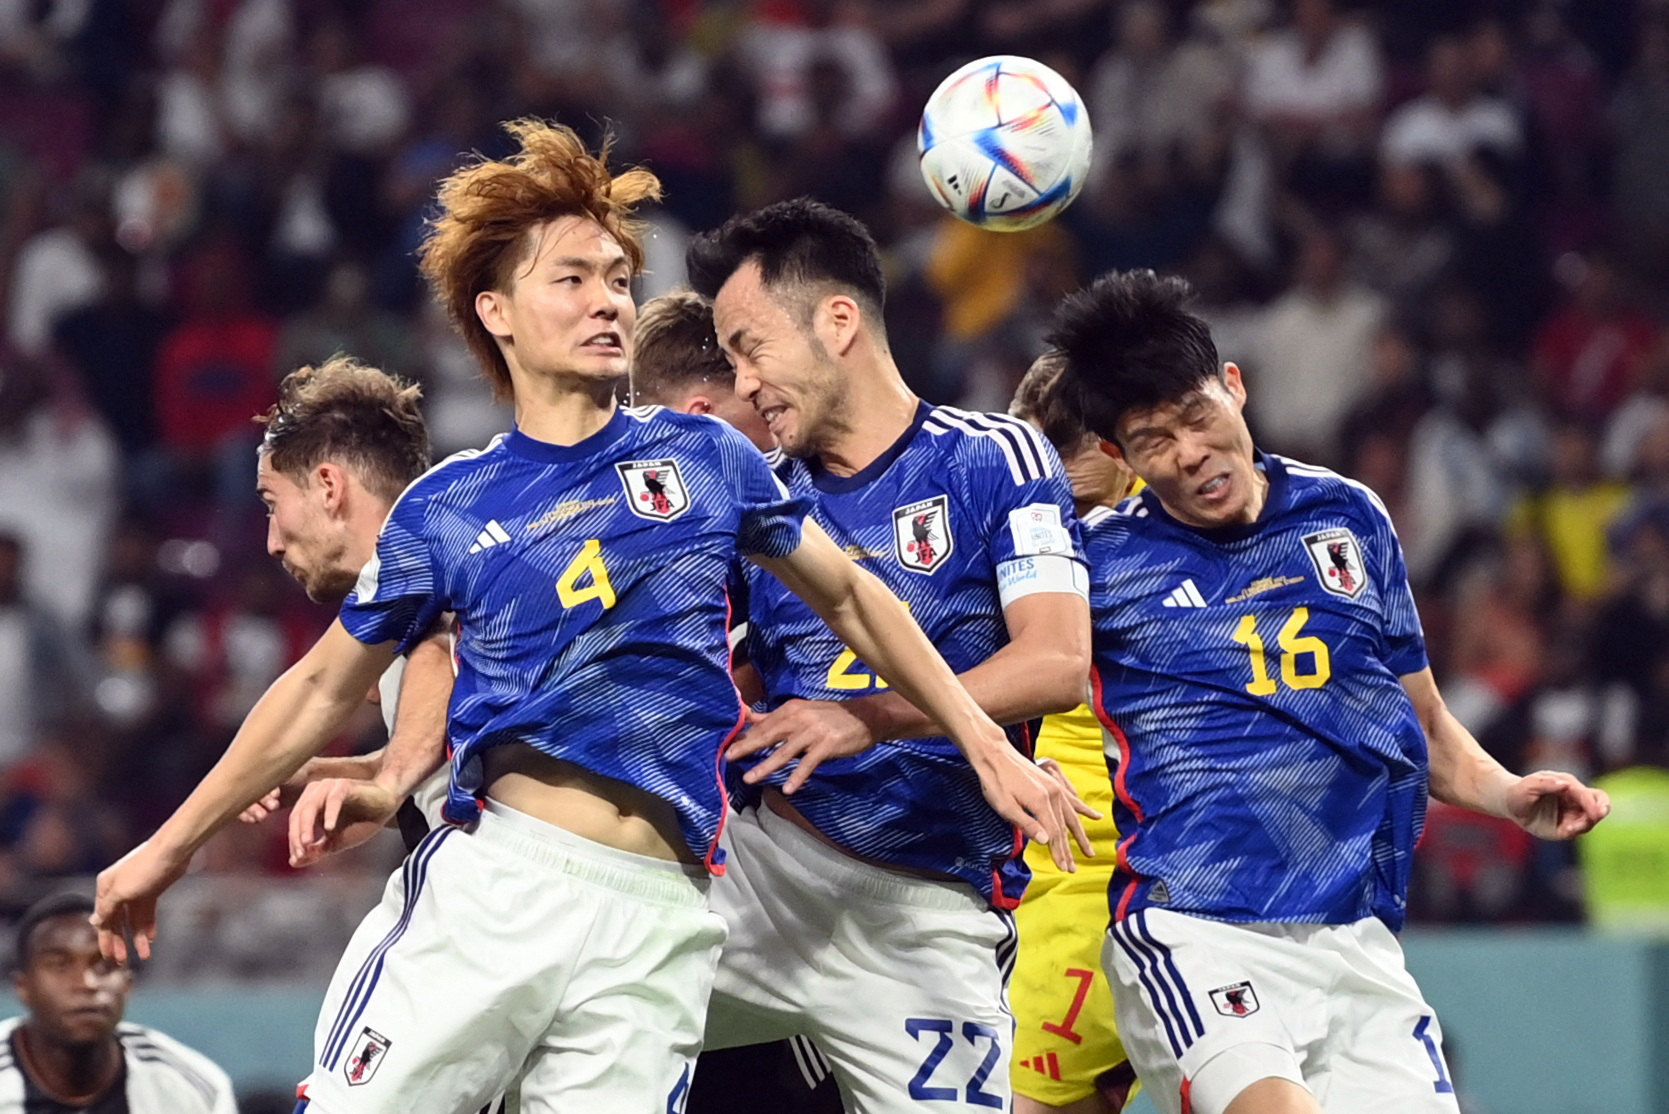 Nhật Bản - Costa Rica 0-1: Bất ngờ Los Ticos với chiến thắng mở màn - Ảnh 1.